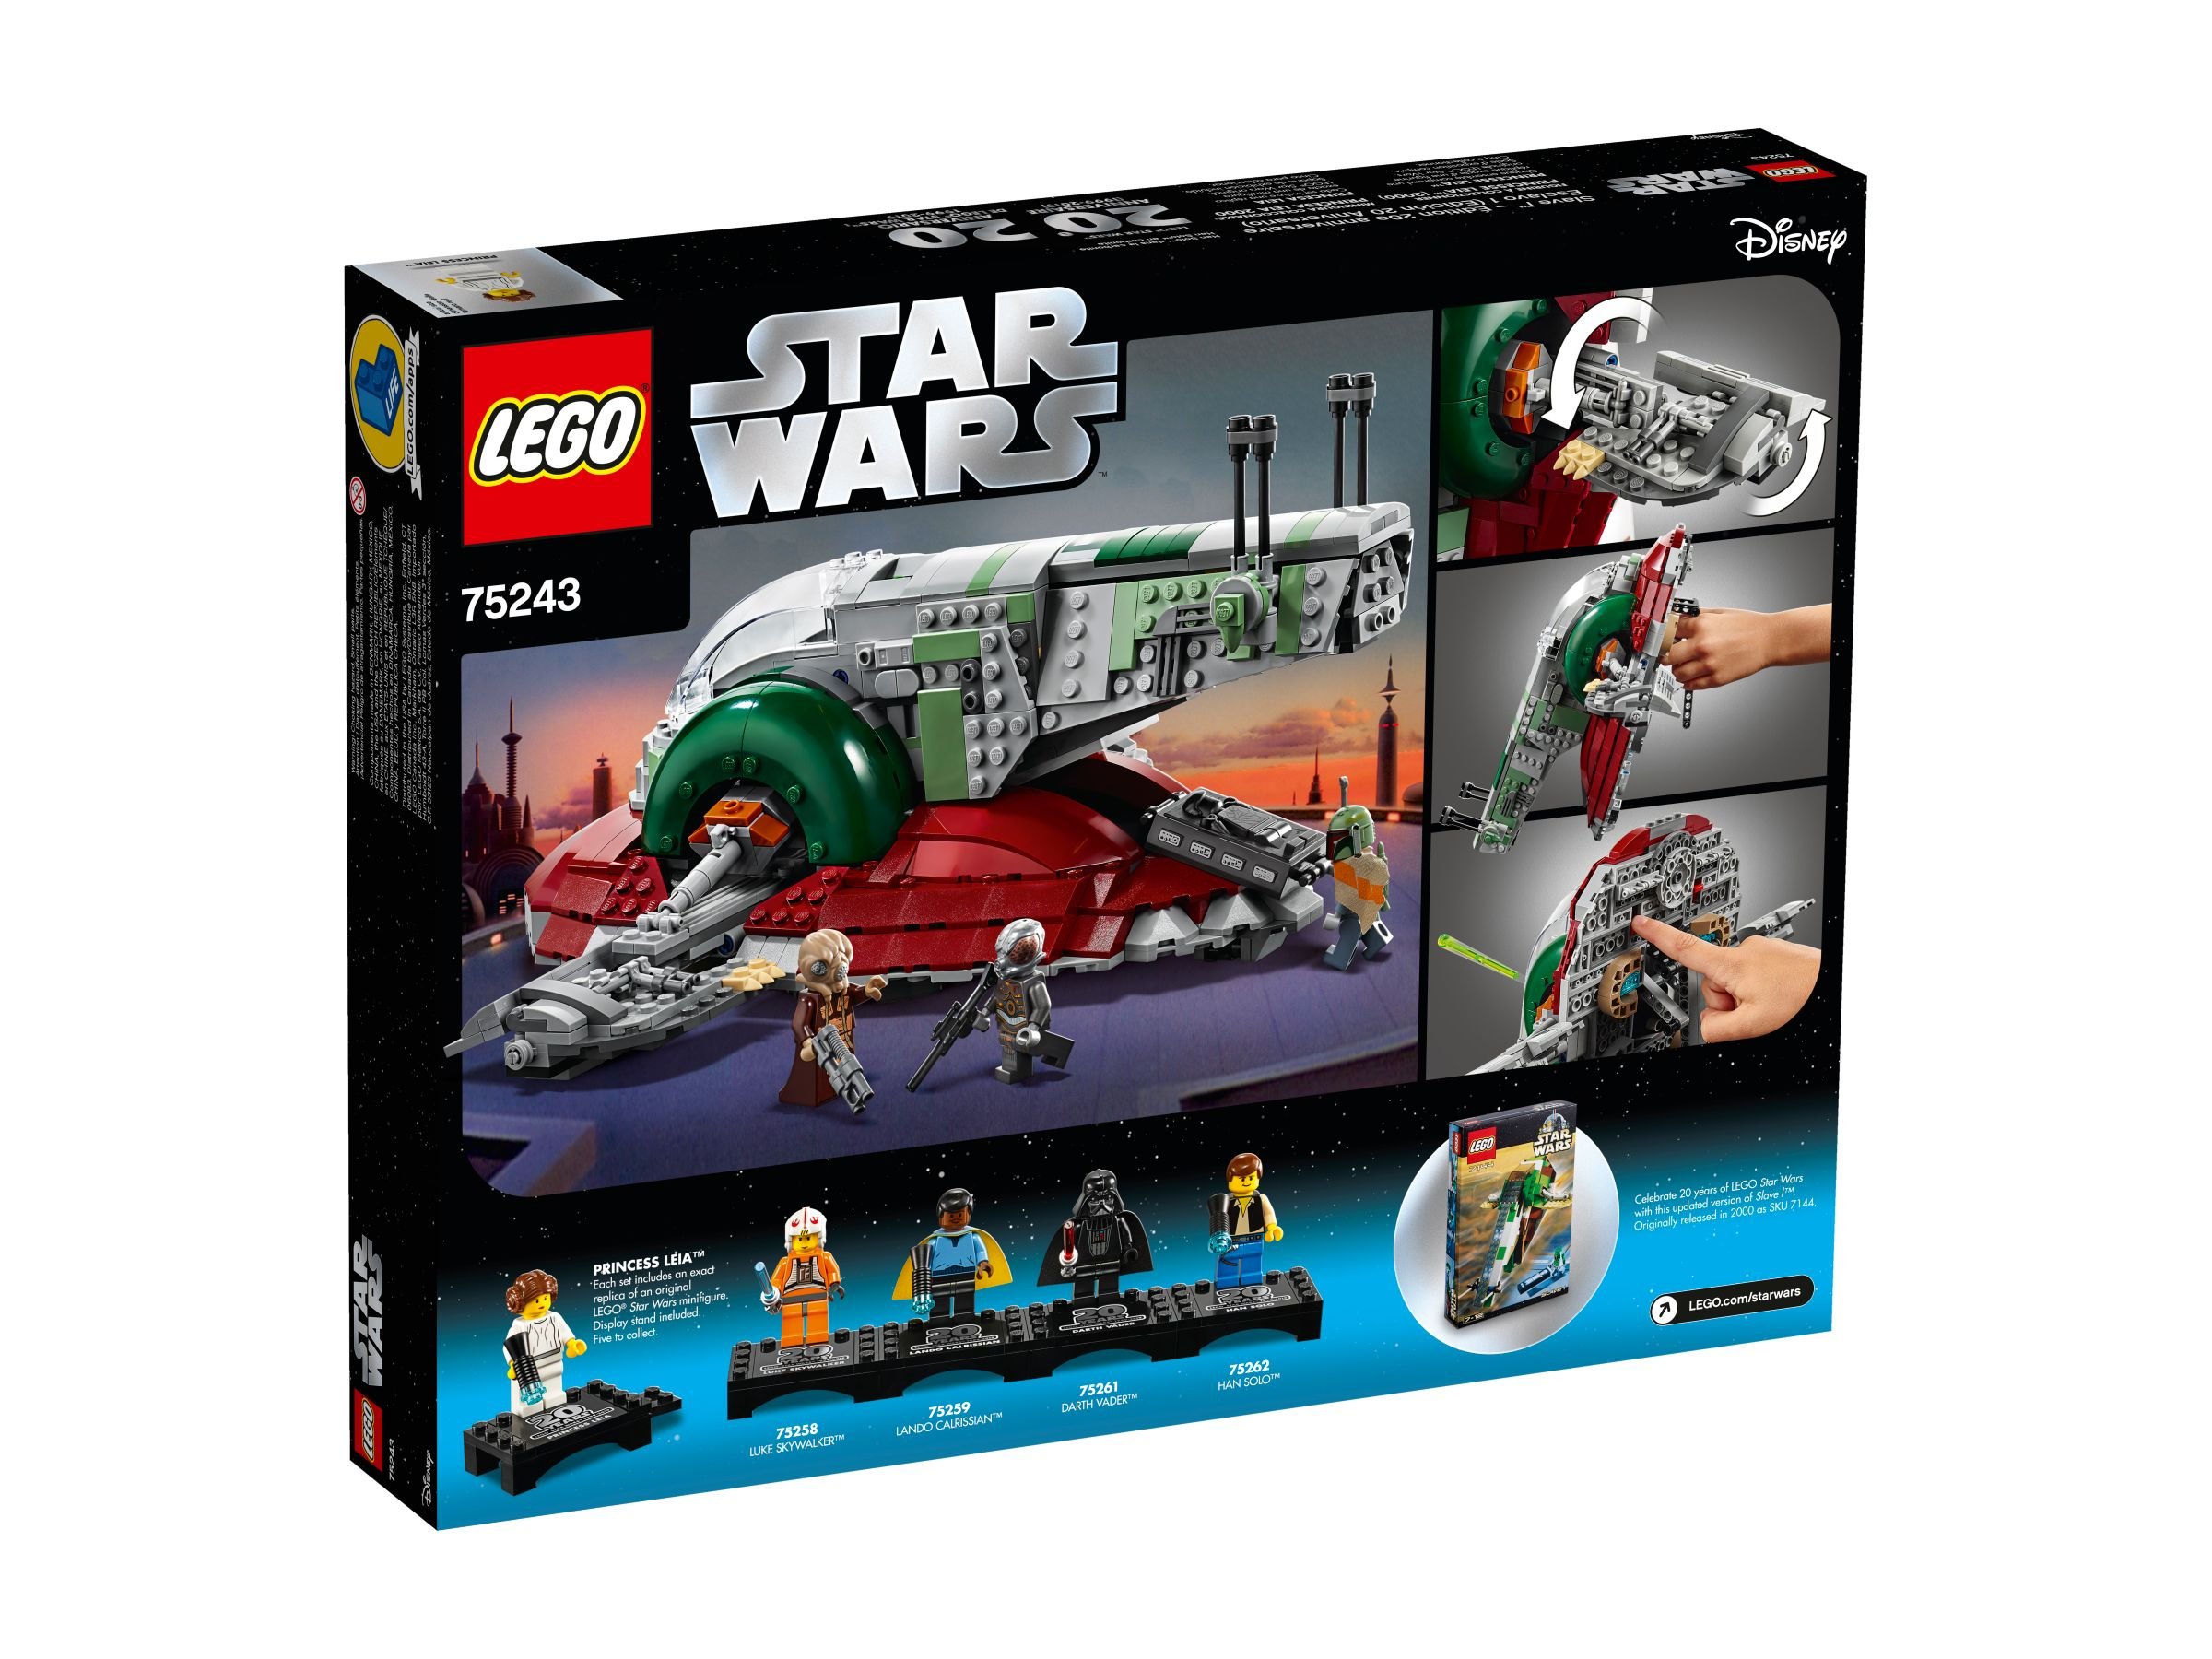 LEGO Star Wars 75243 Slave I™ – 20 Jahre LEGO Star Wars LEGO_75243_alt4.jpg